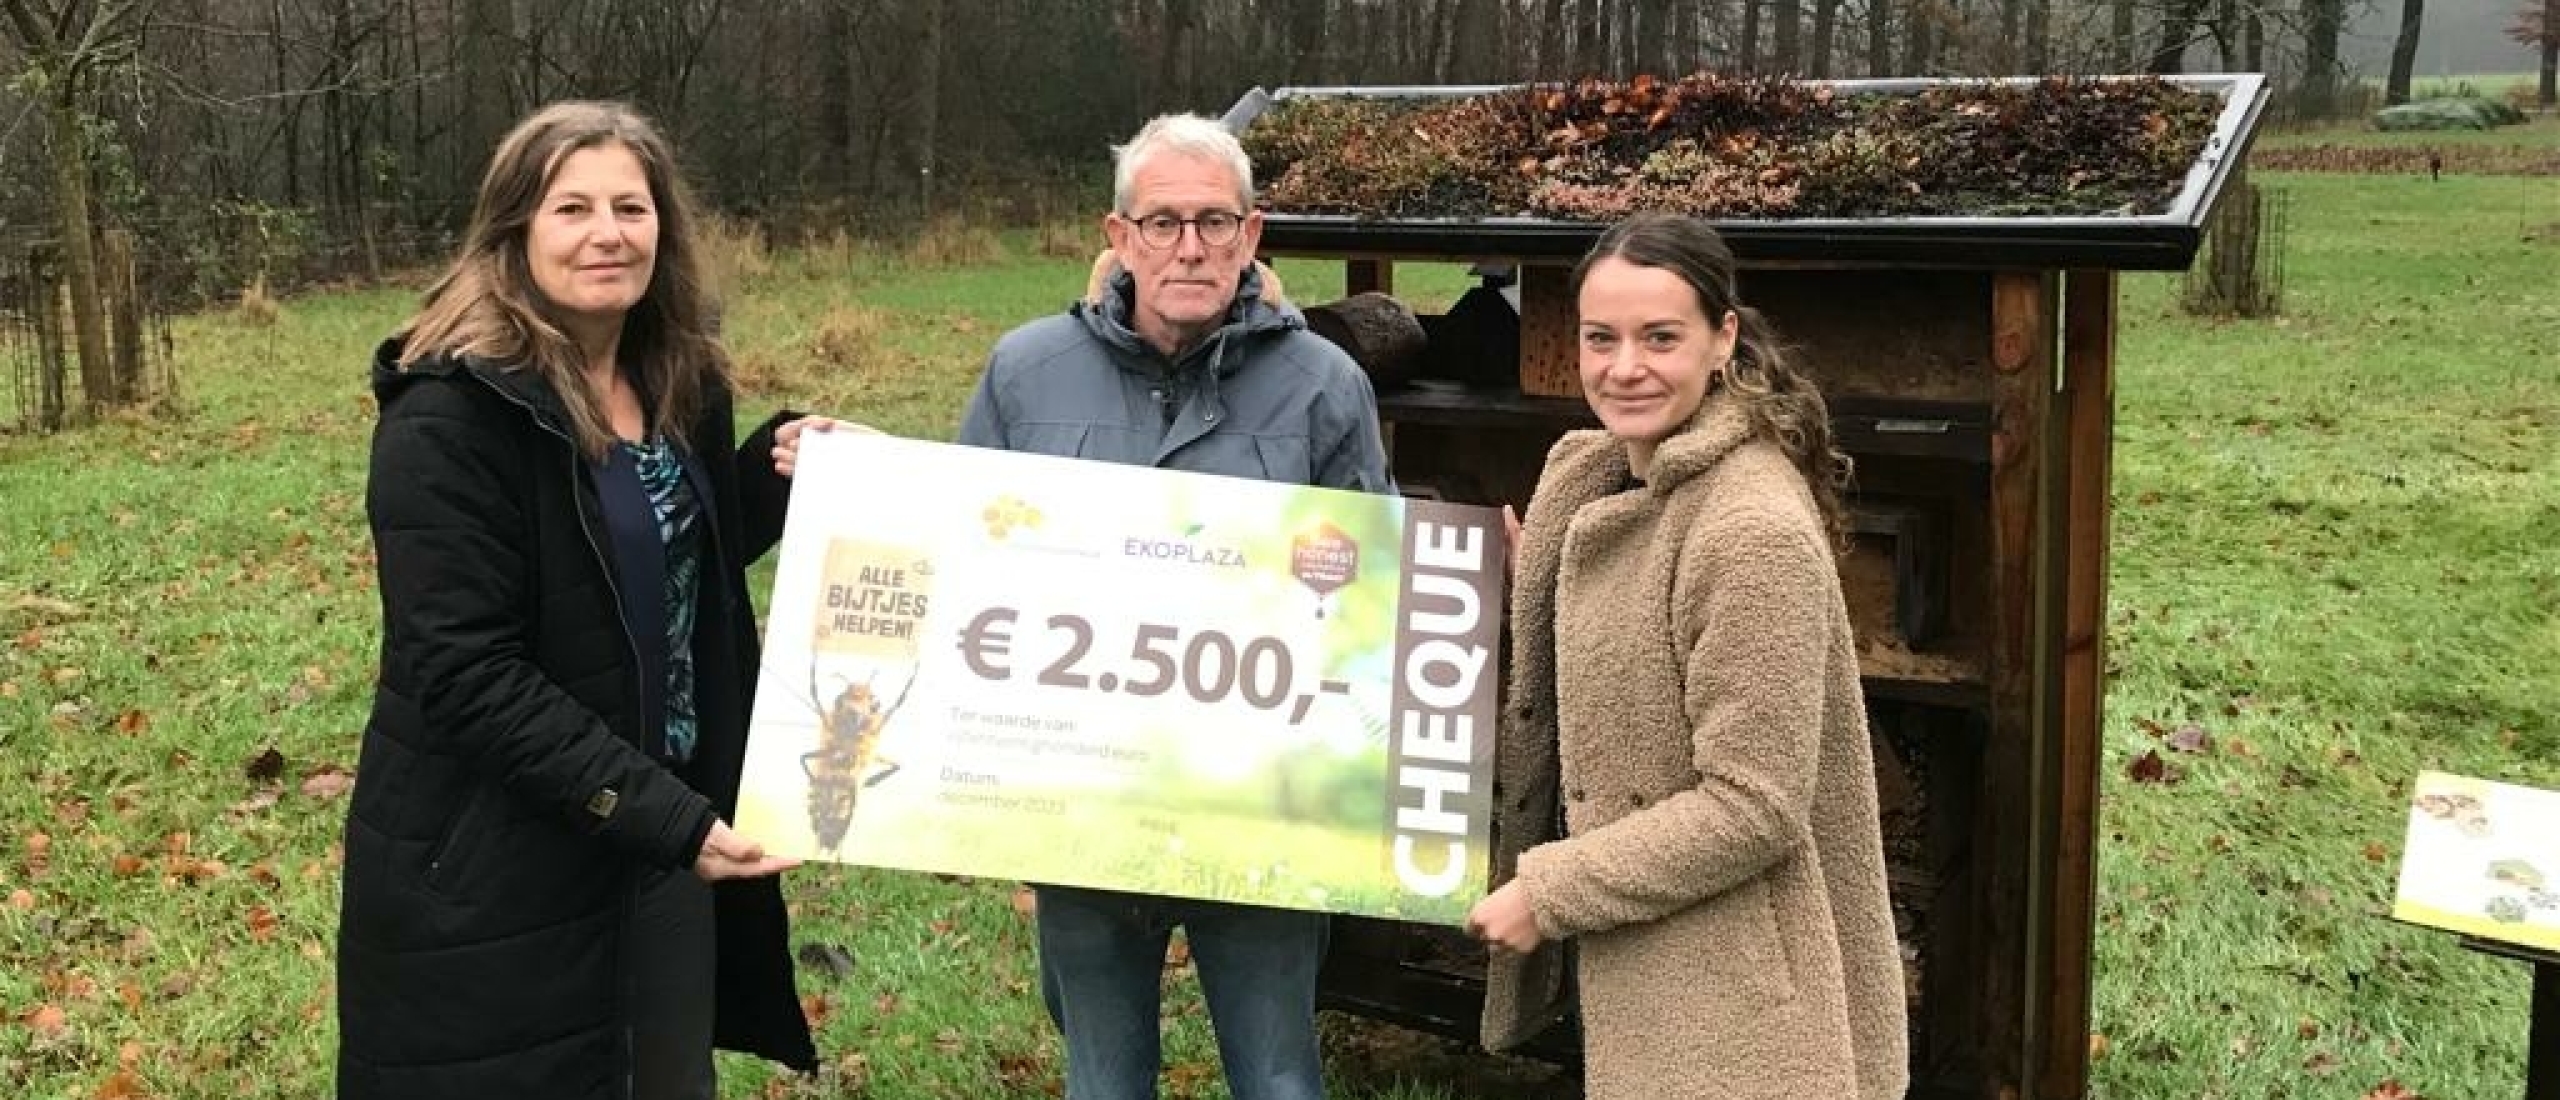 Ekoplaza en De Traay doneren 2500 euro aan Bijenstichting